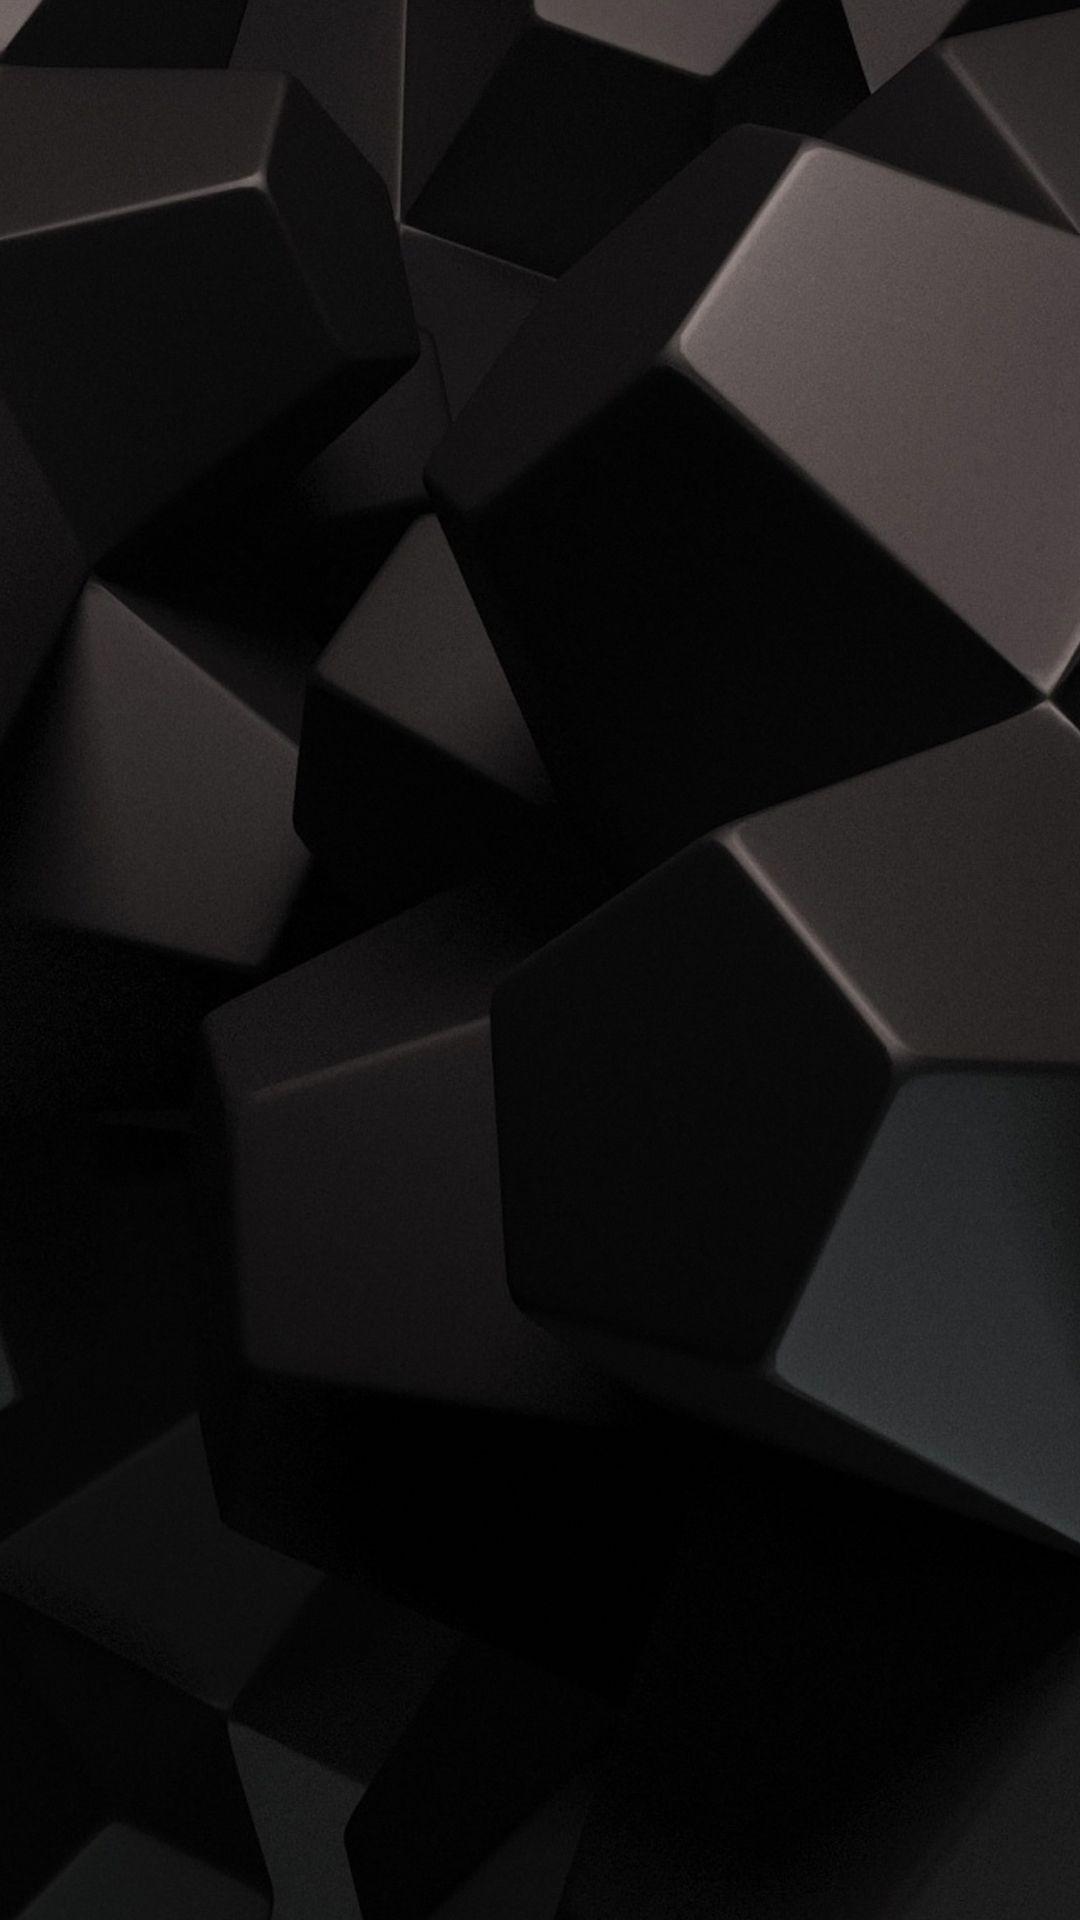 Bạn có muốn thưởng thức những hình nền đen 3D đẹp với sự kết hợp hoàn hảo giữa đen và các yếu tố khác? Hãy truy cập vào hình ảnh liên quan ngay để cảm nhận sự tinh tế và độc đáo của chúng.